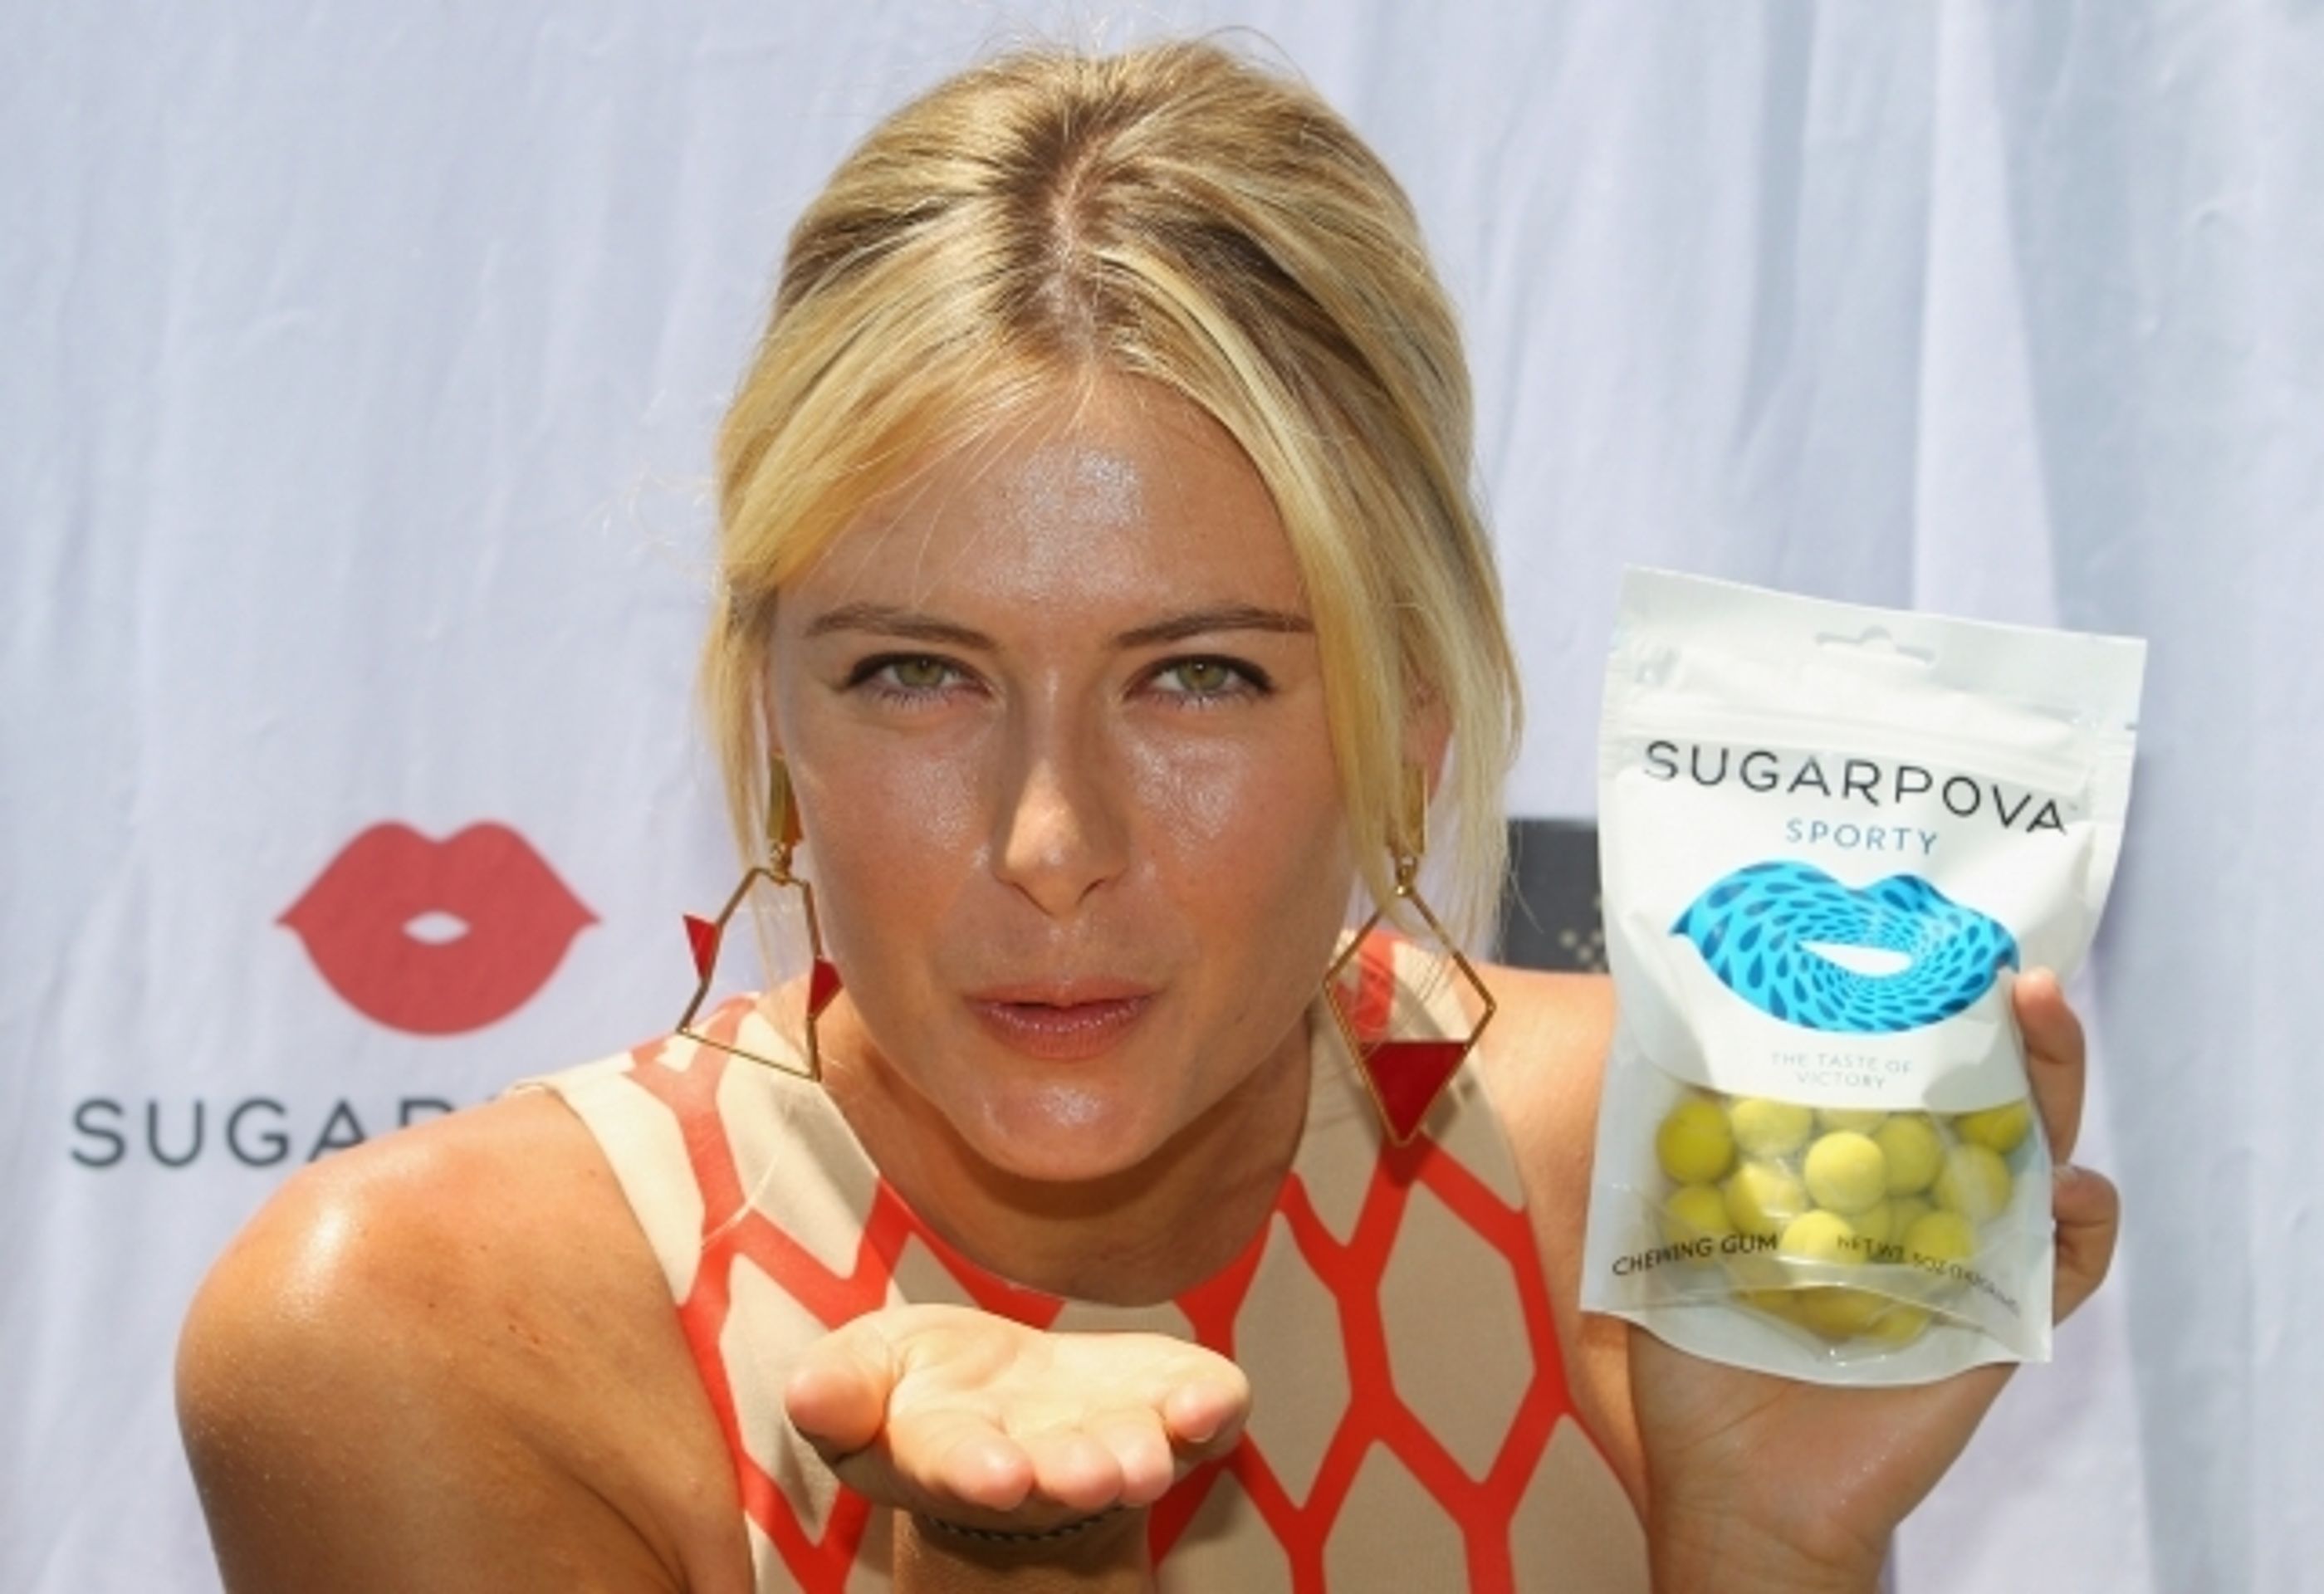 Šarapovová a její bonbóny Sugarpova - 3 - GALERIE: Šarapovová propaguje v Austrálii své bonbóny (11/13)